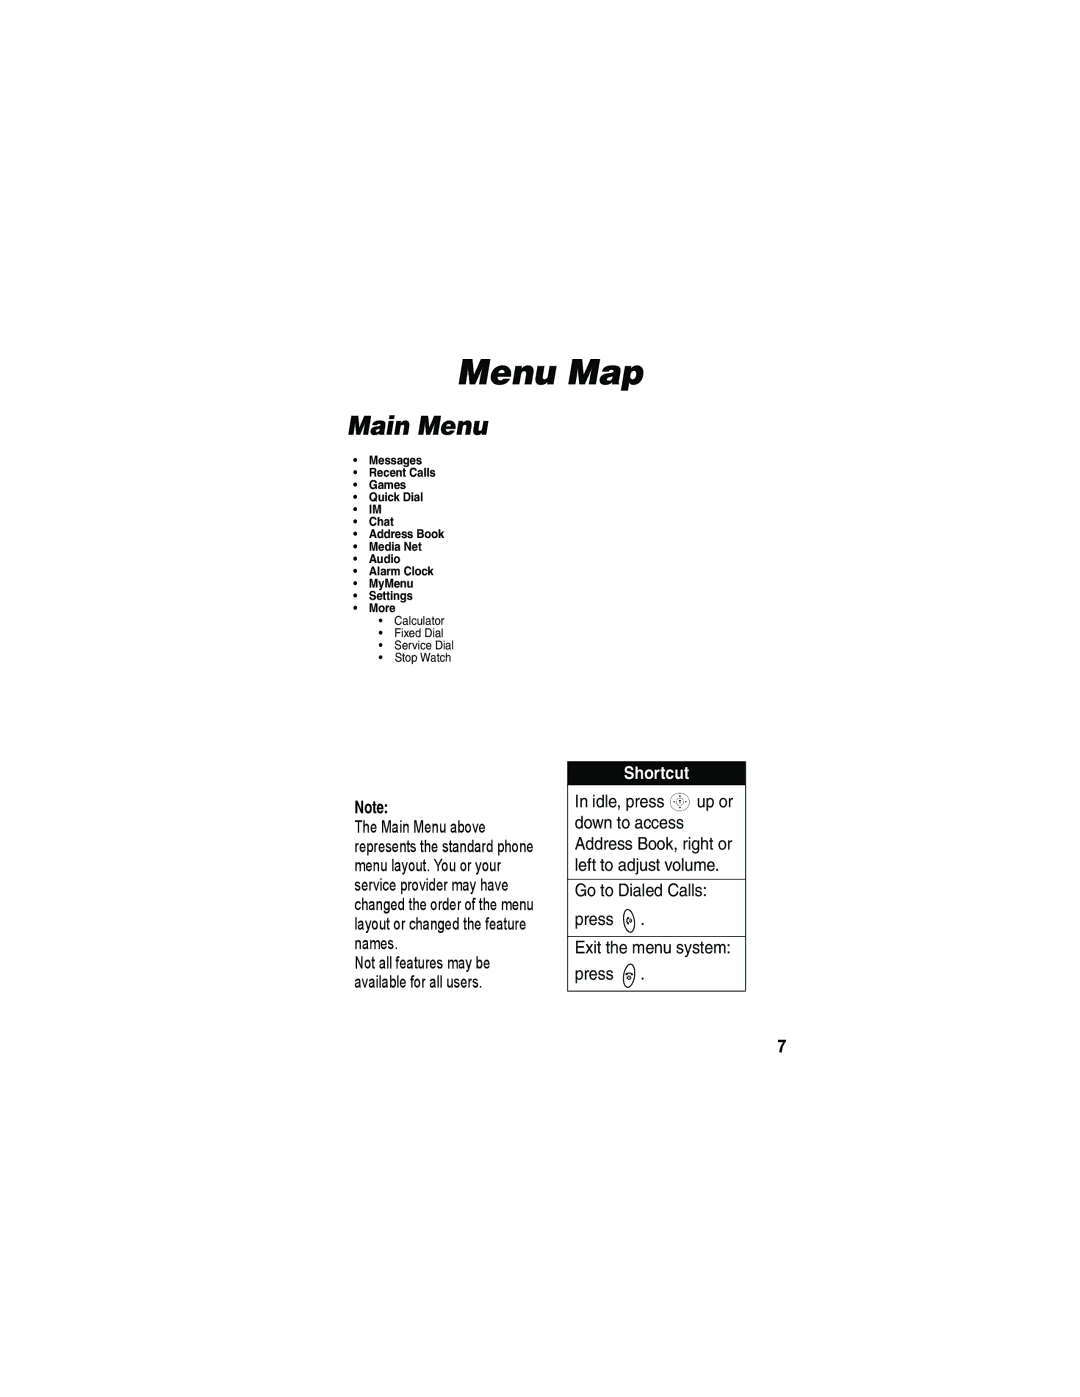 Motorola V173 manual Menu Map, Main Menu, Shortcut, Go to Dialed Calls press Exit the menu system press 